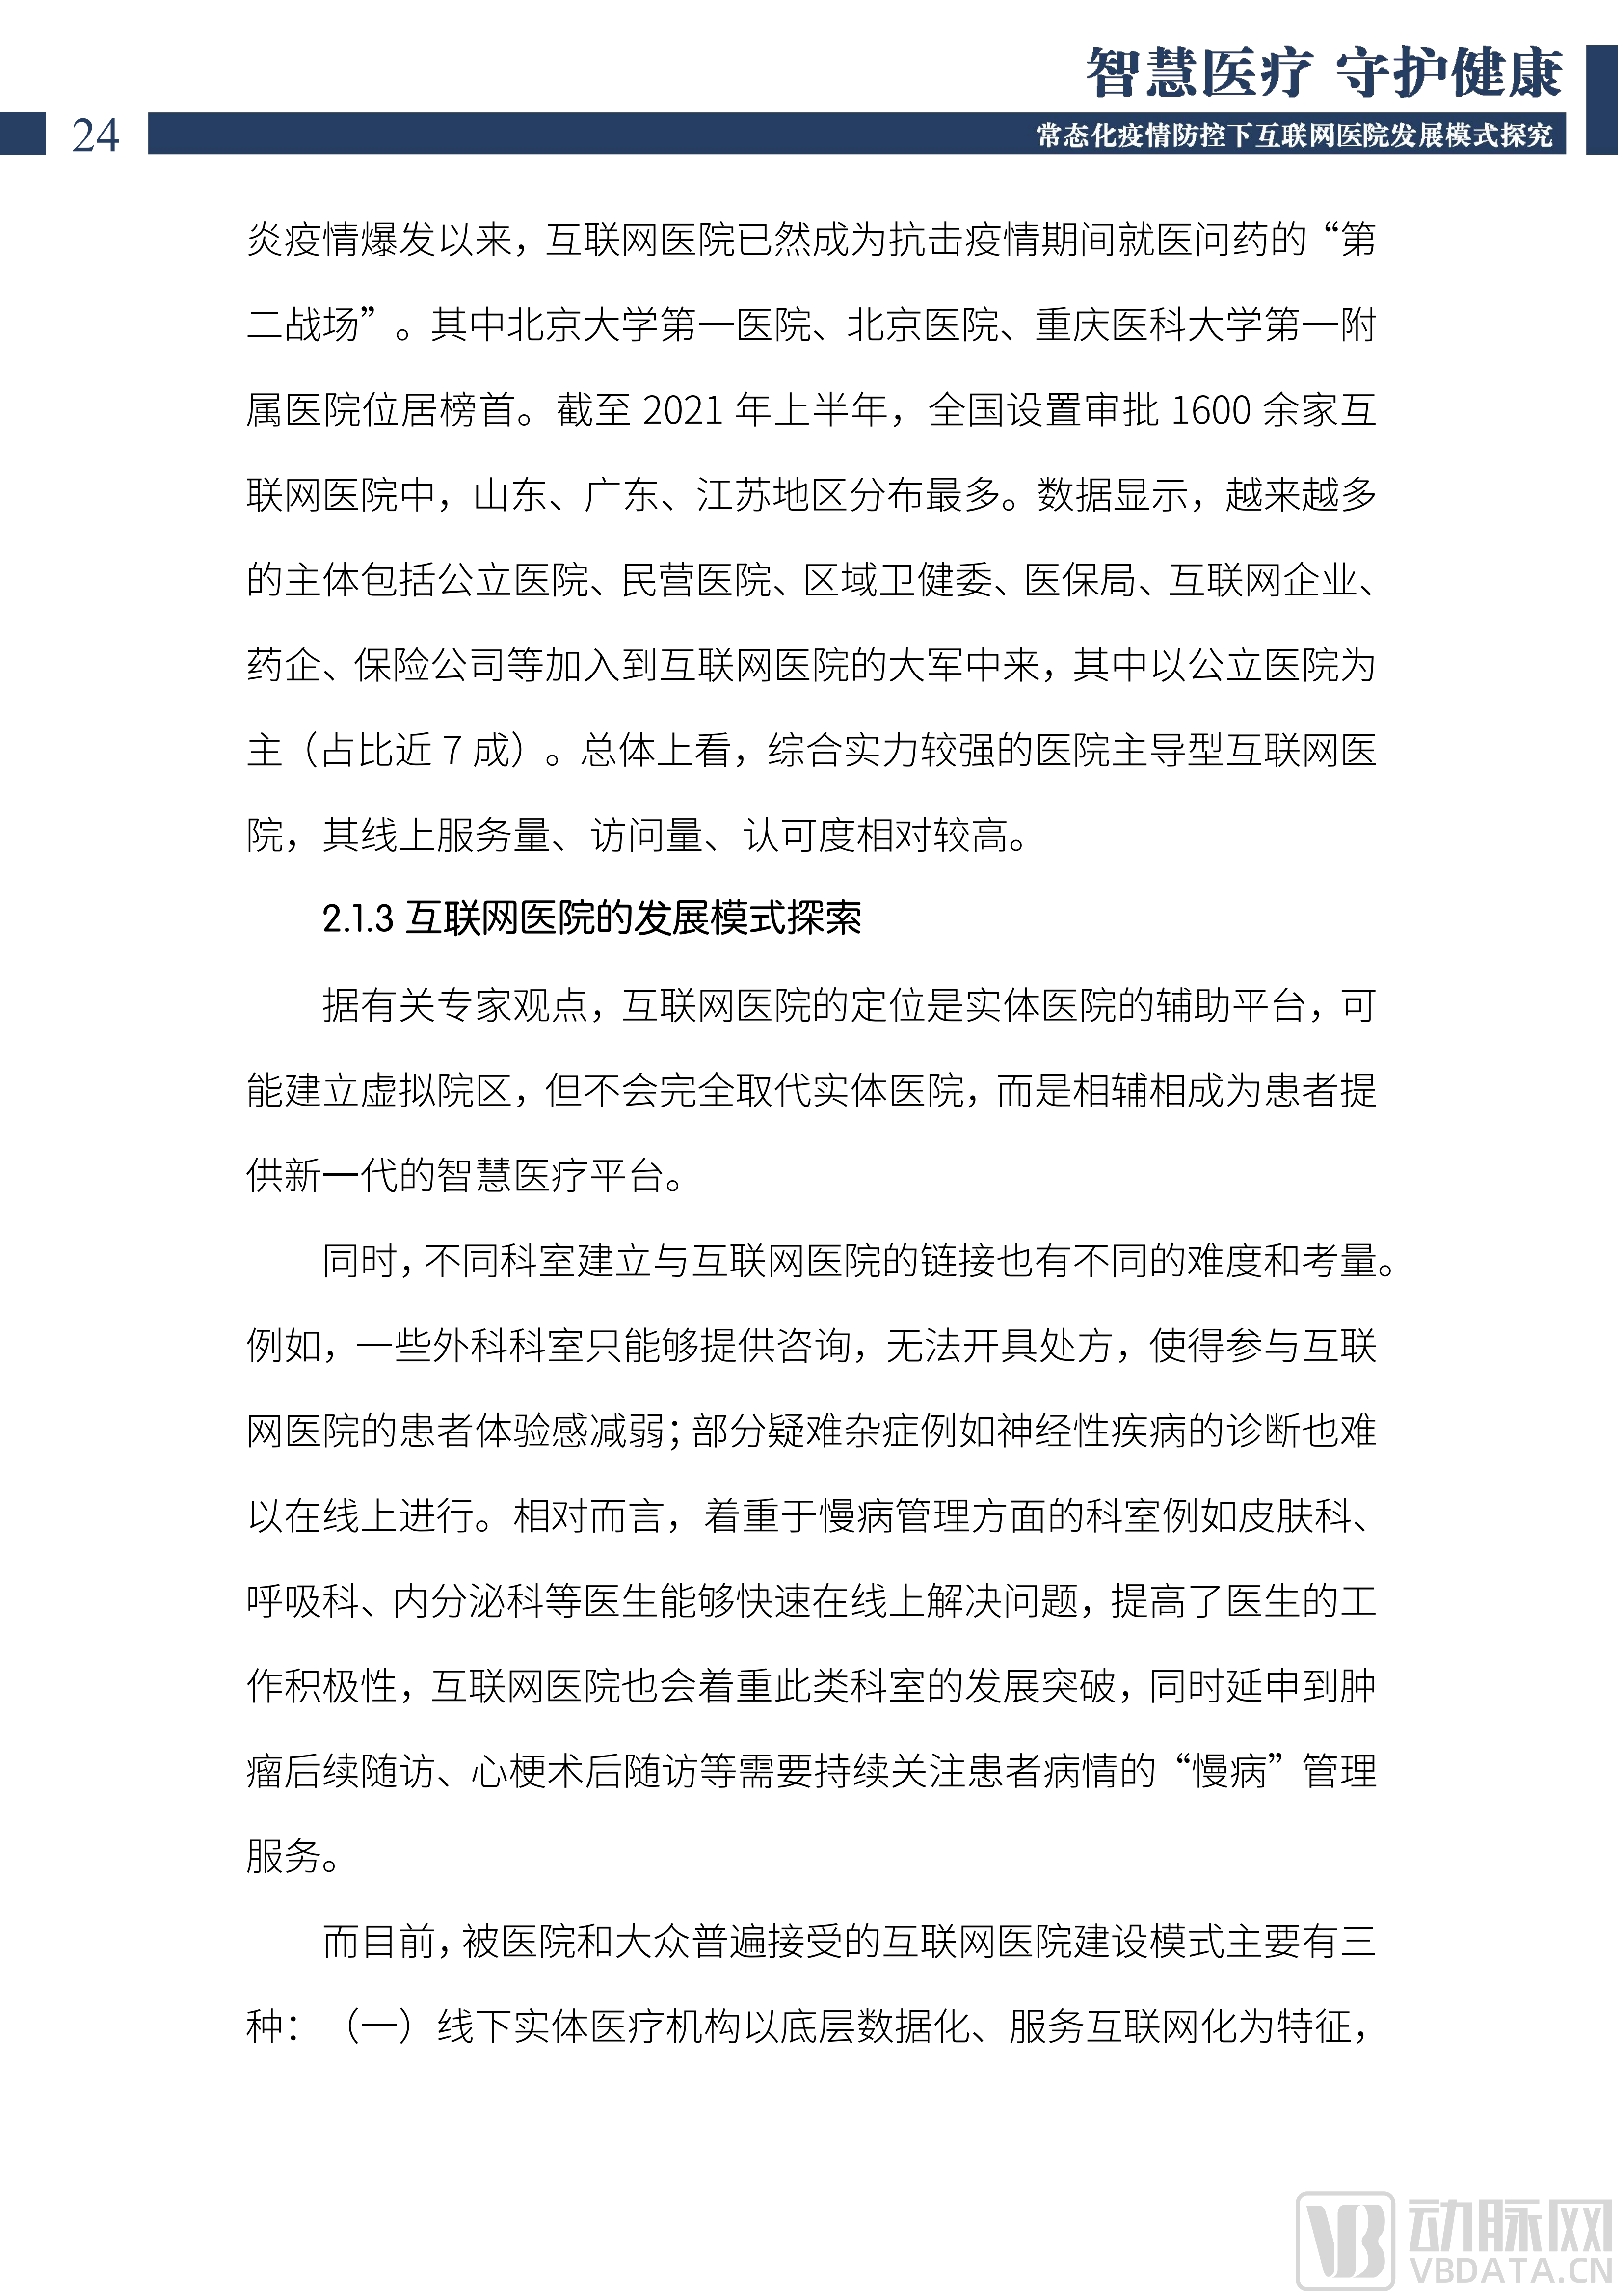 2022中国互联网医院发展调研报告(1)_25.png